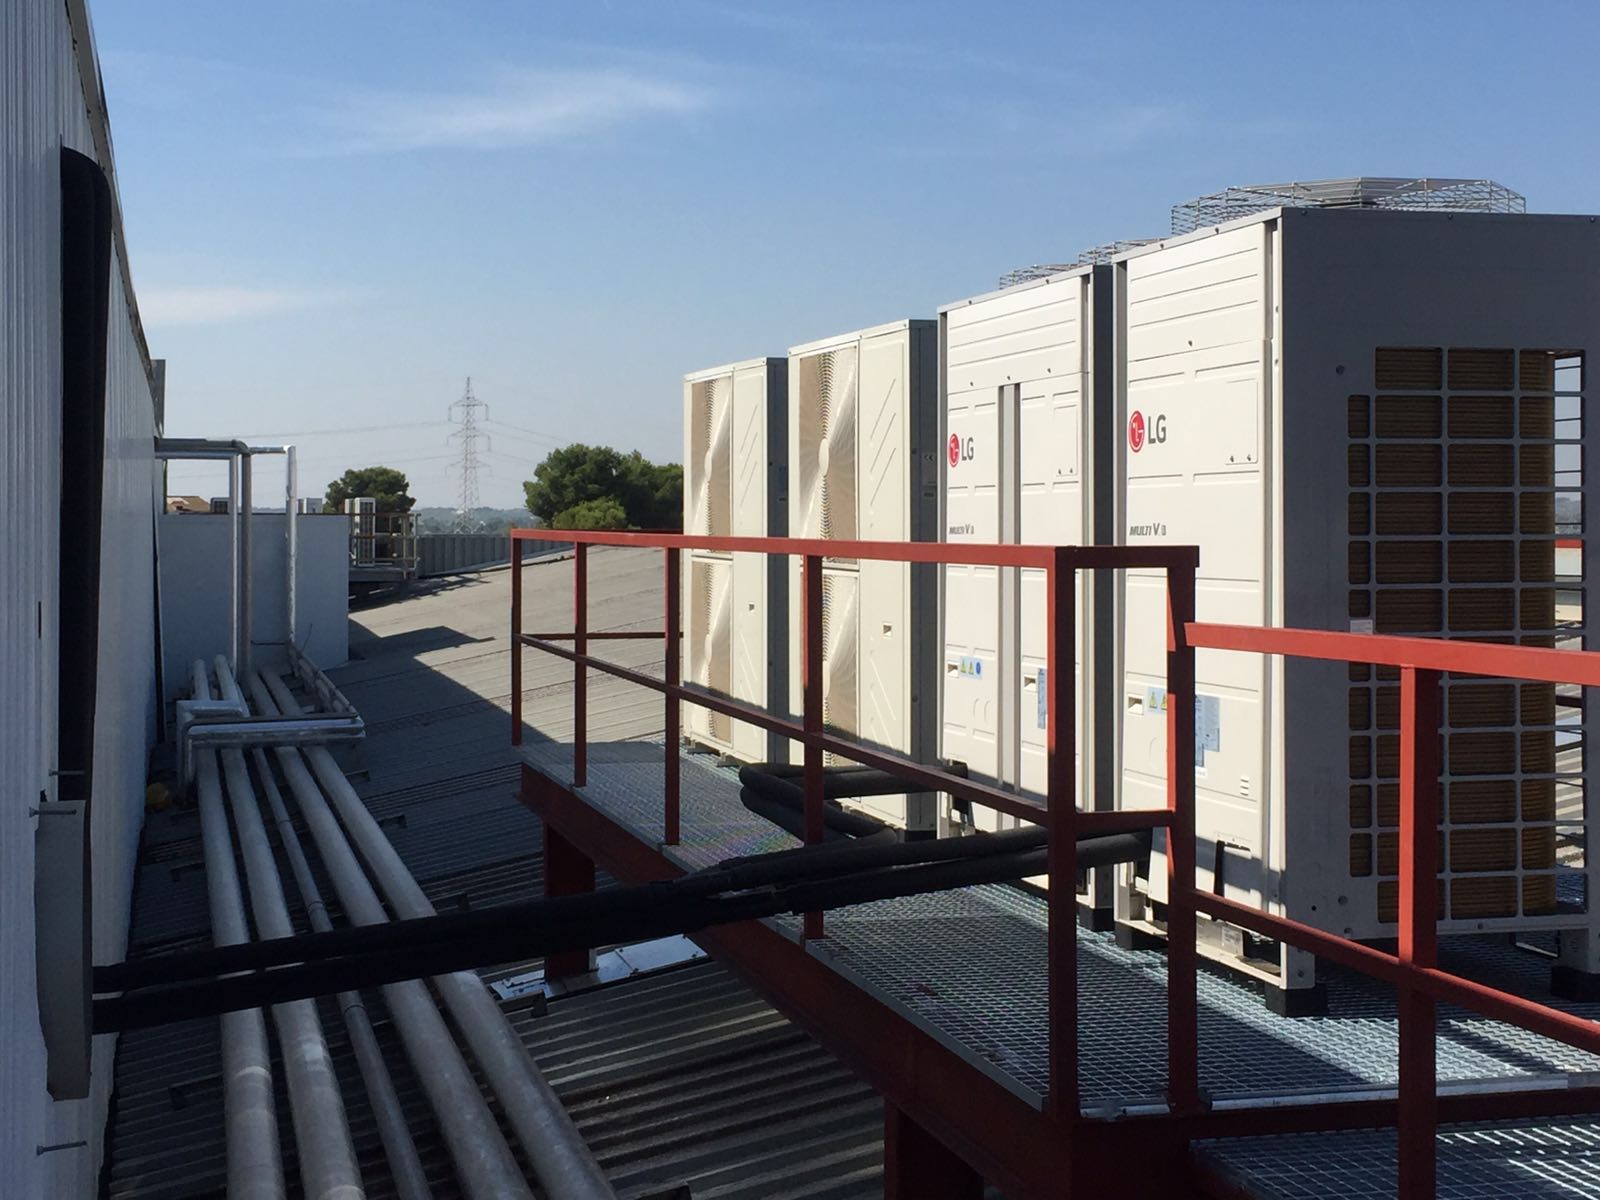 Montaje e instalación de equipos de climatizacion realizado por Cleanroom System SRL en plantas industriales